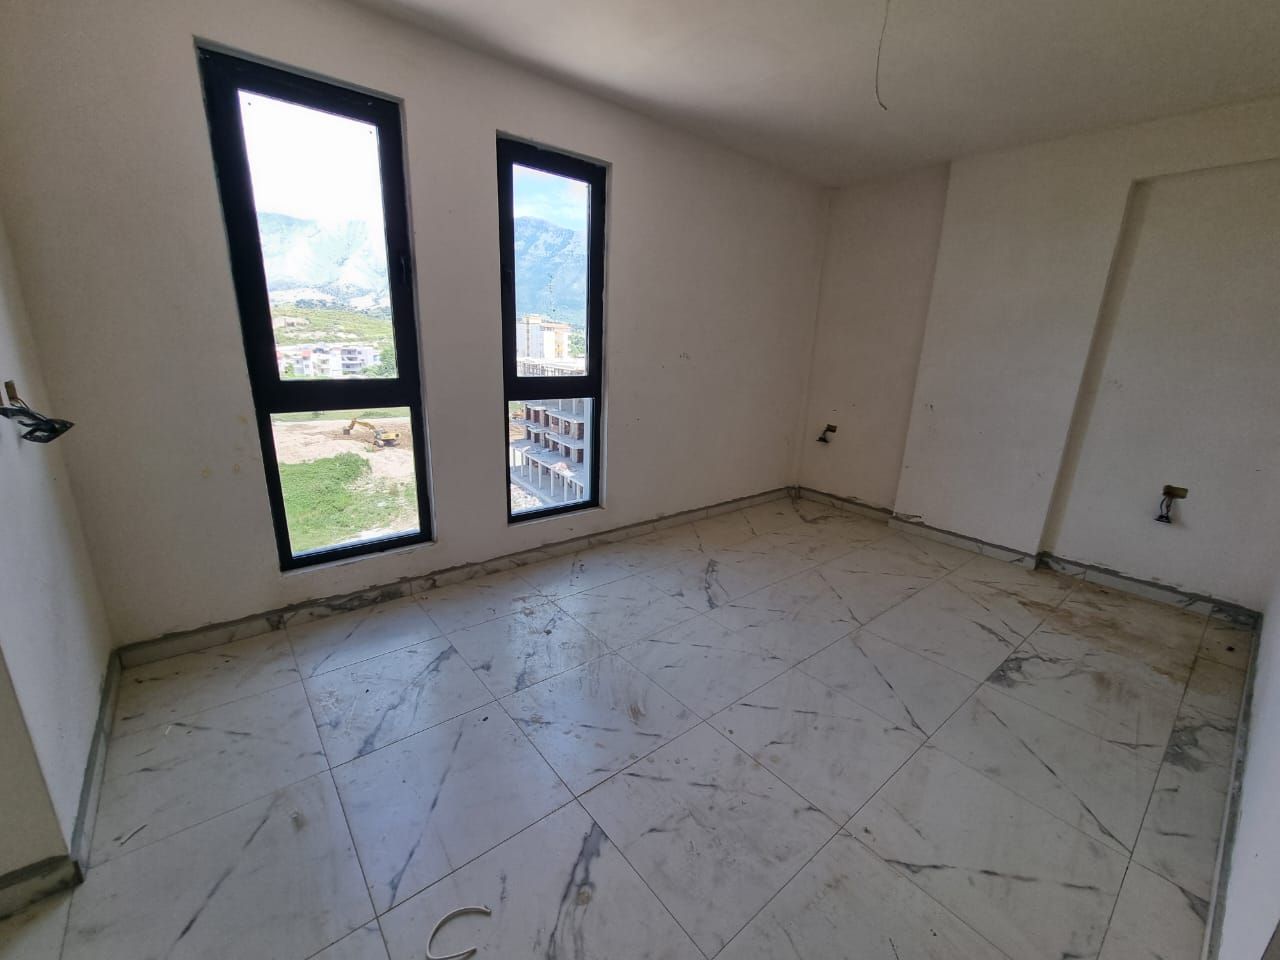 Albańskie Mieszkania Na Sprzedaż We Wlorze